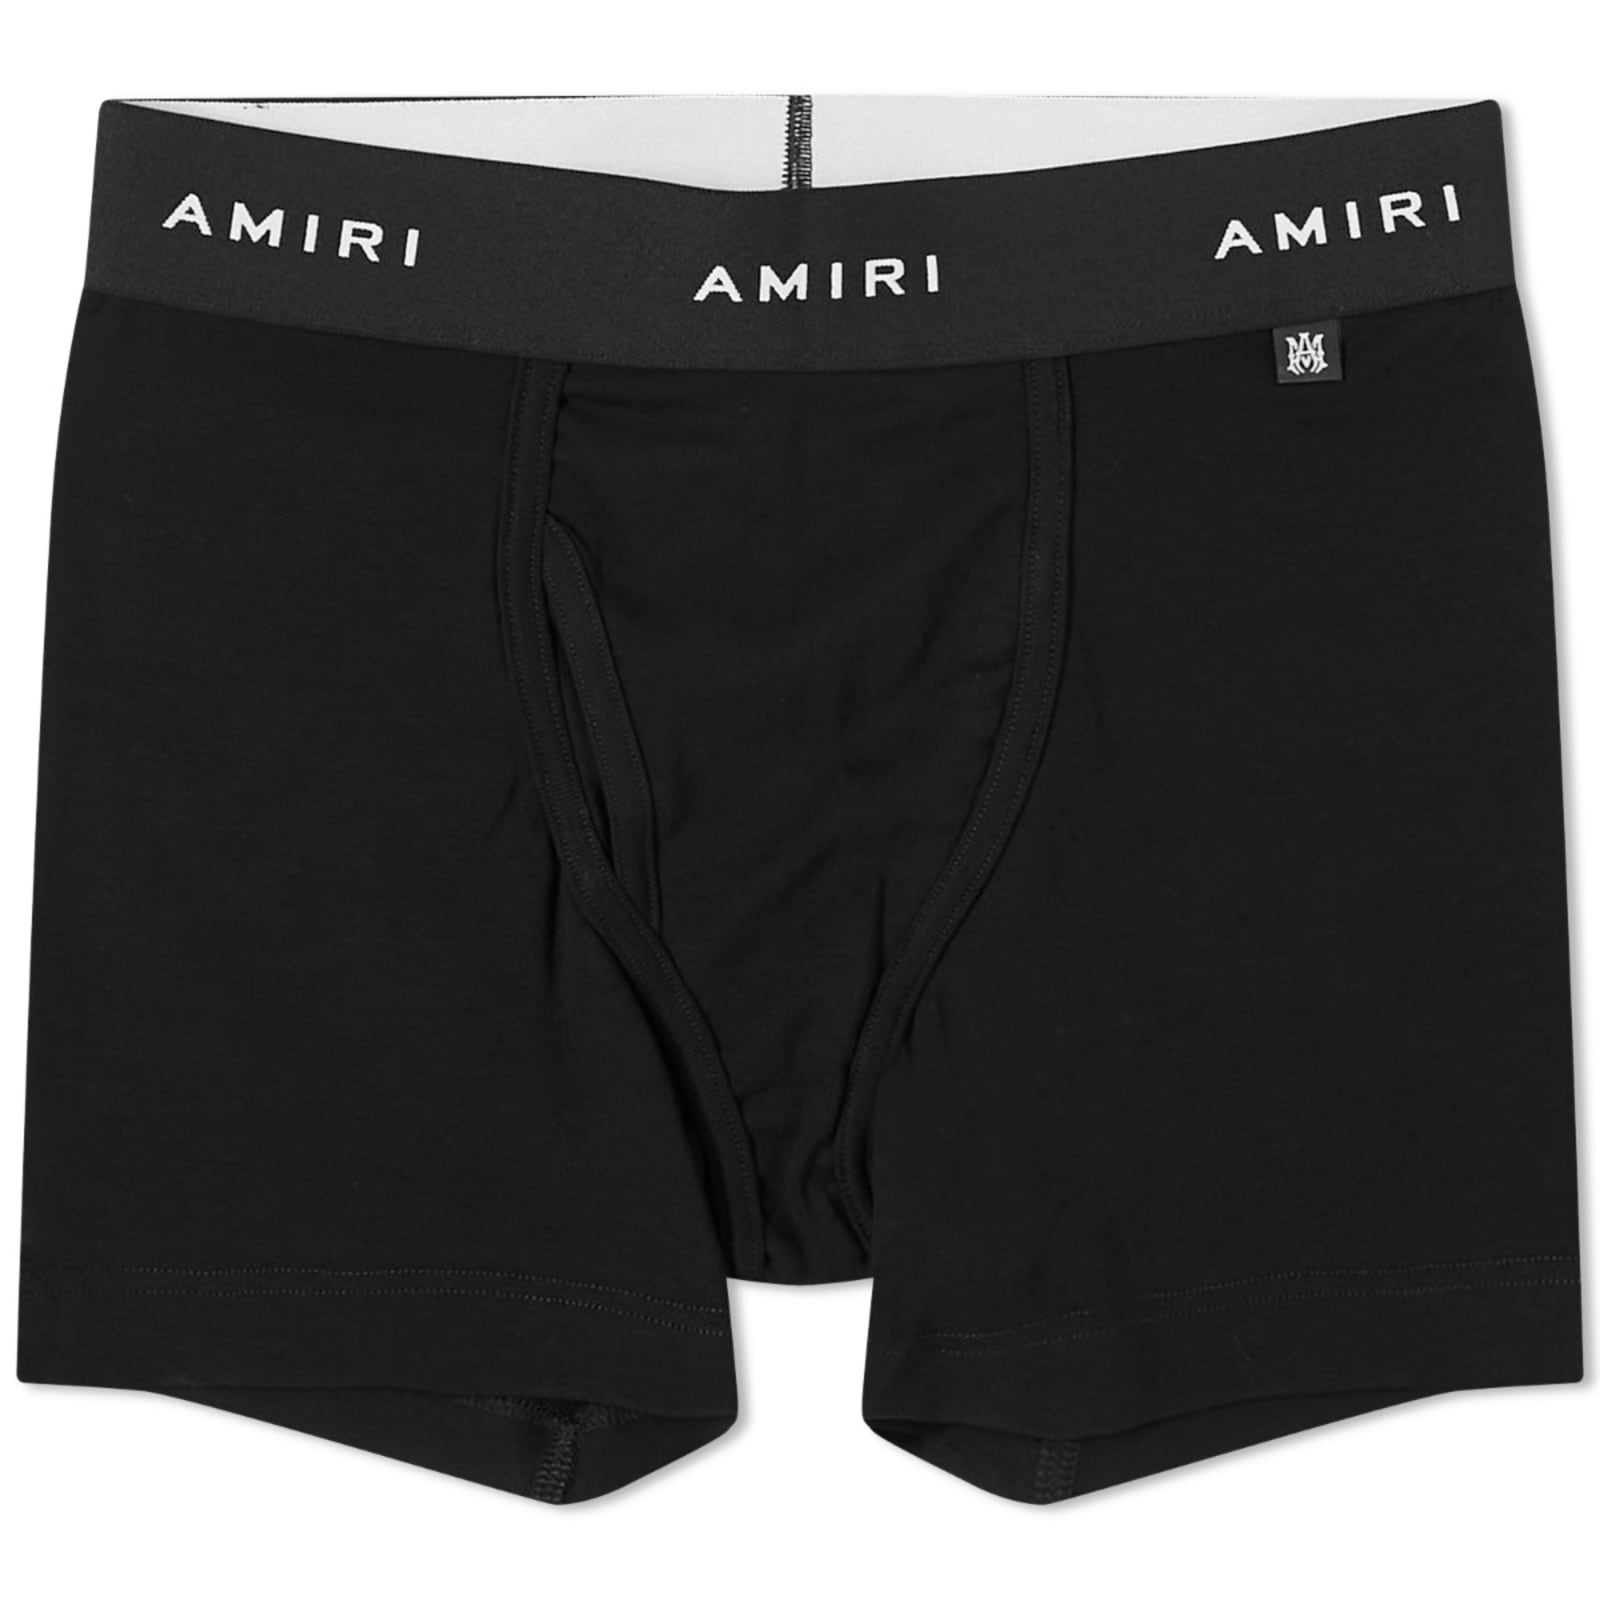 Шорты Amiri Label Boxer, черный